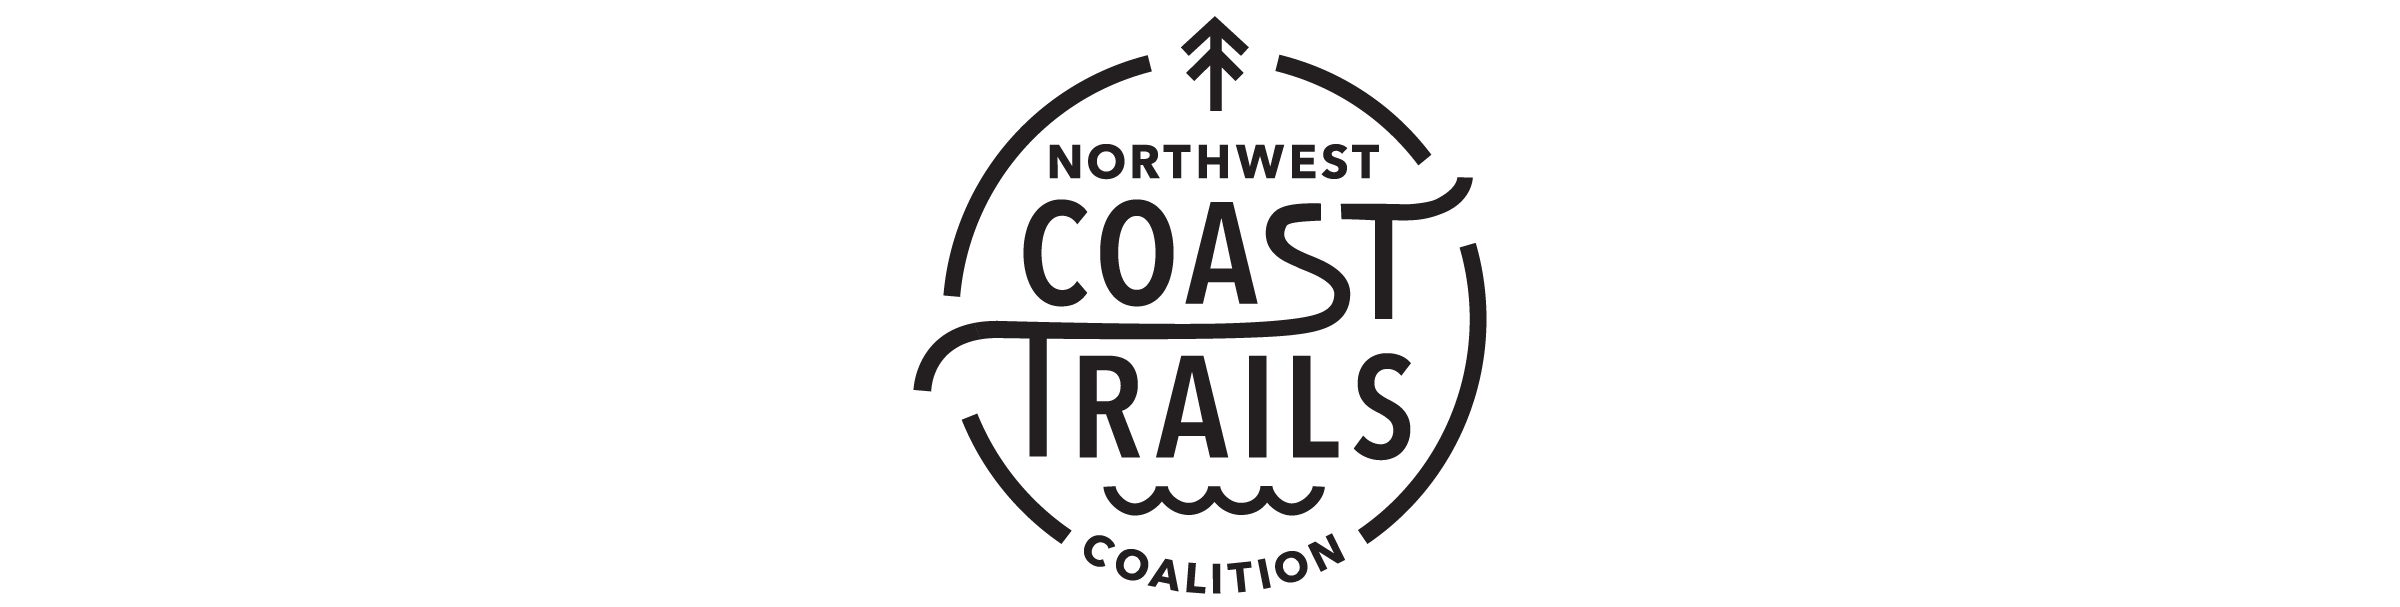 Coast Logo - Northwest Coast Trails Coalition